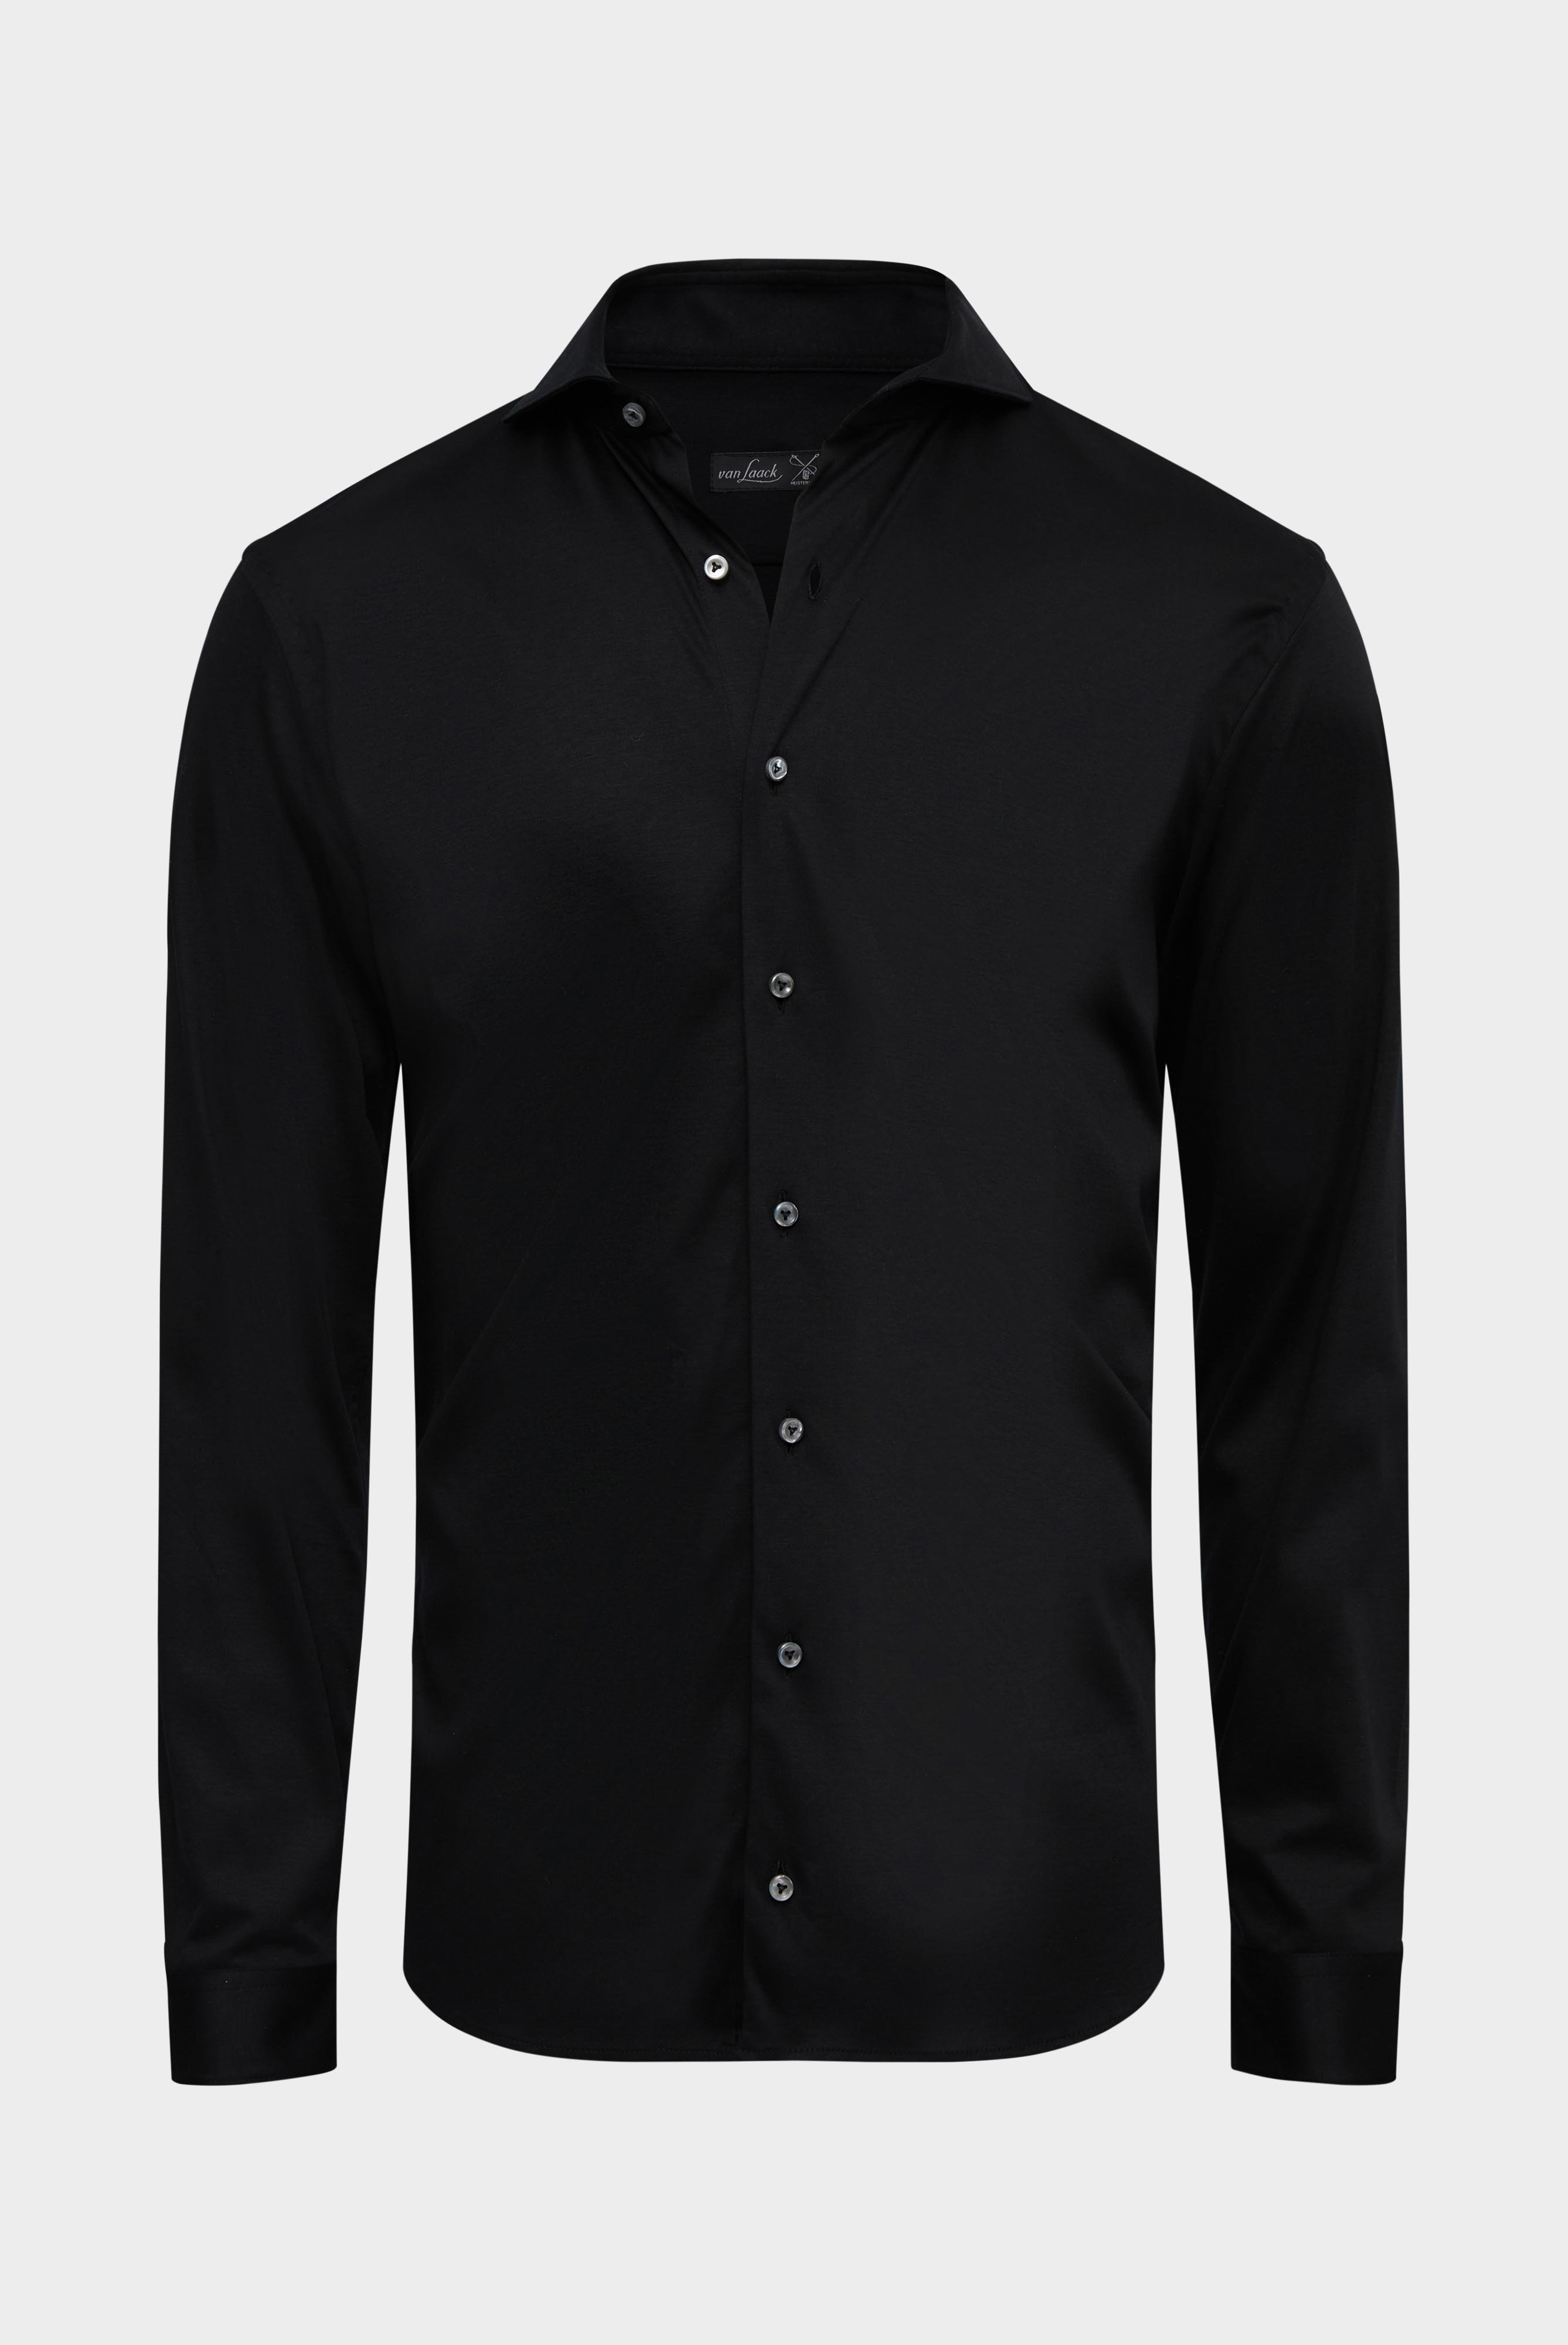 Bügelleichte Hemden+Jersey Hemd mit glänzender Optik Tailor Fit+20.1683.UC.180031.099.S